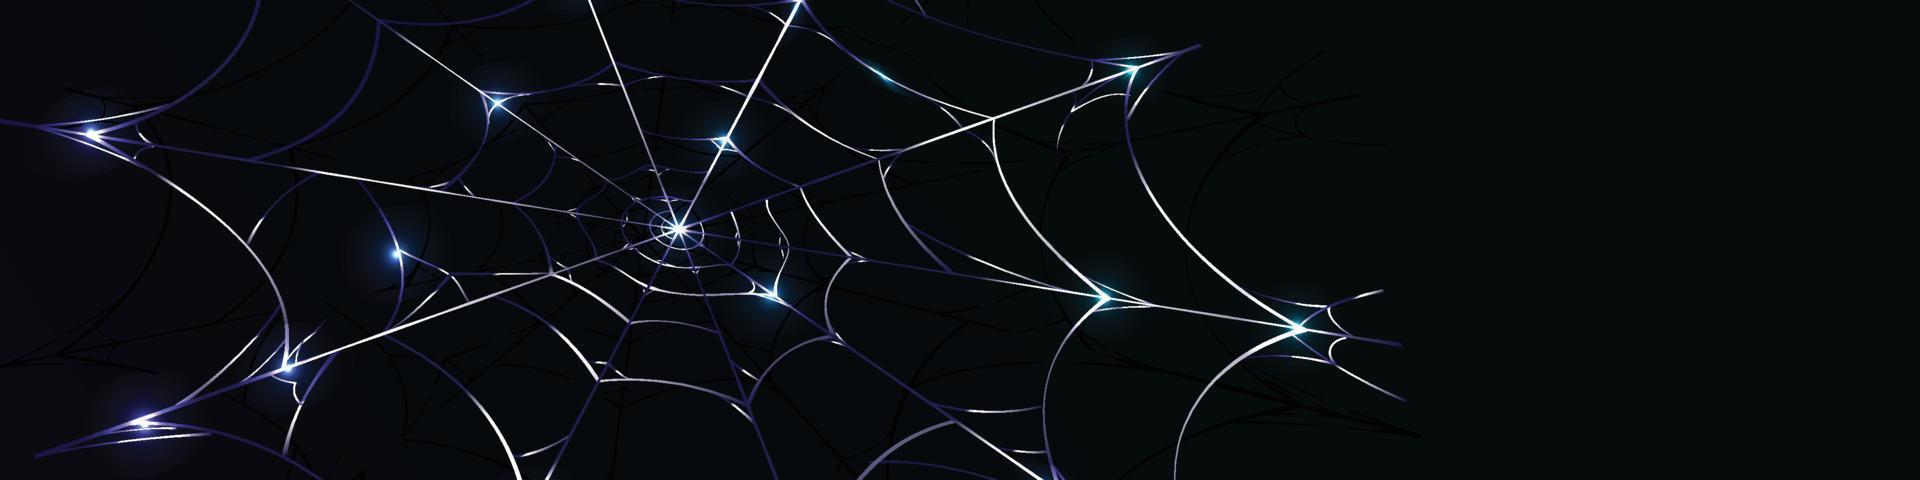 banner de fondo de tela de araña azul elegante con luz de brillo vector